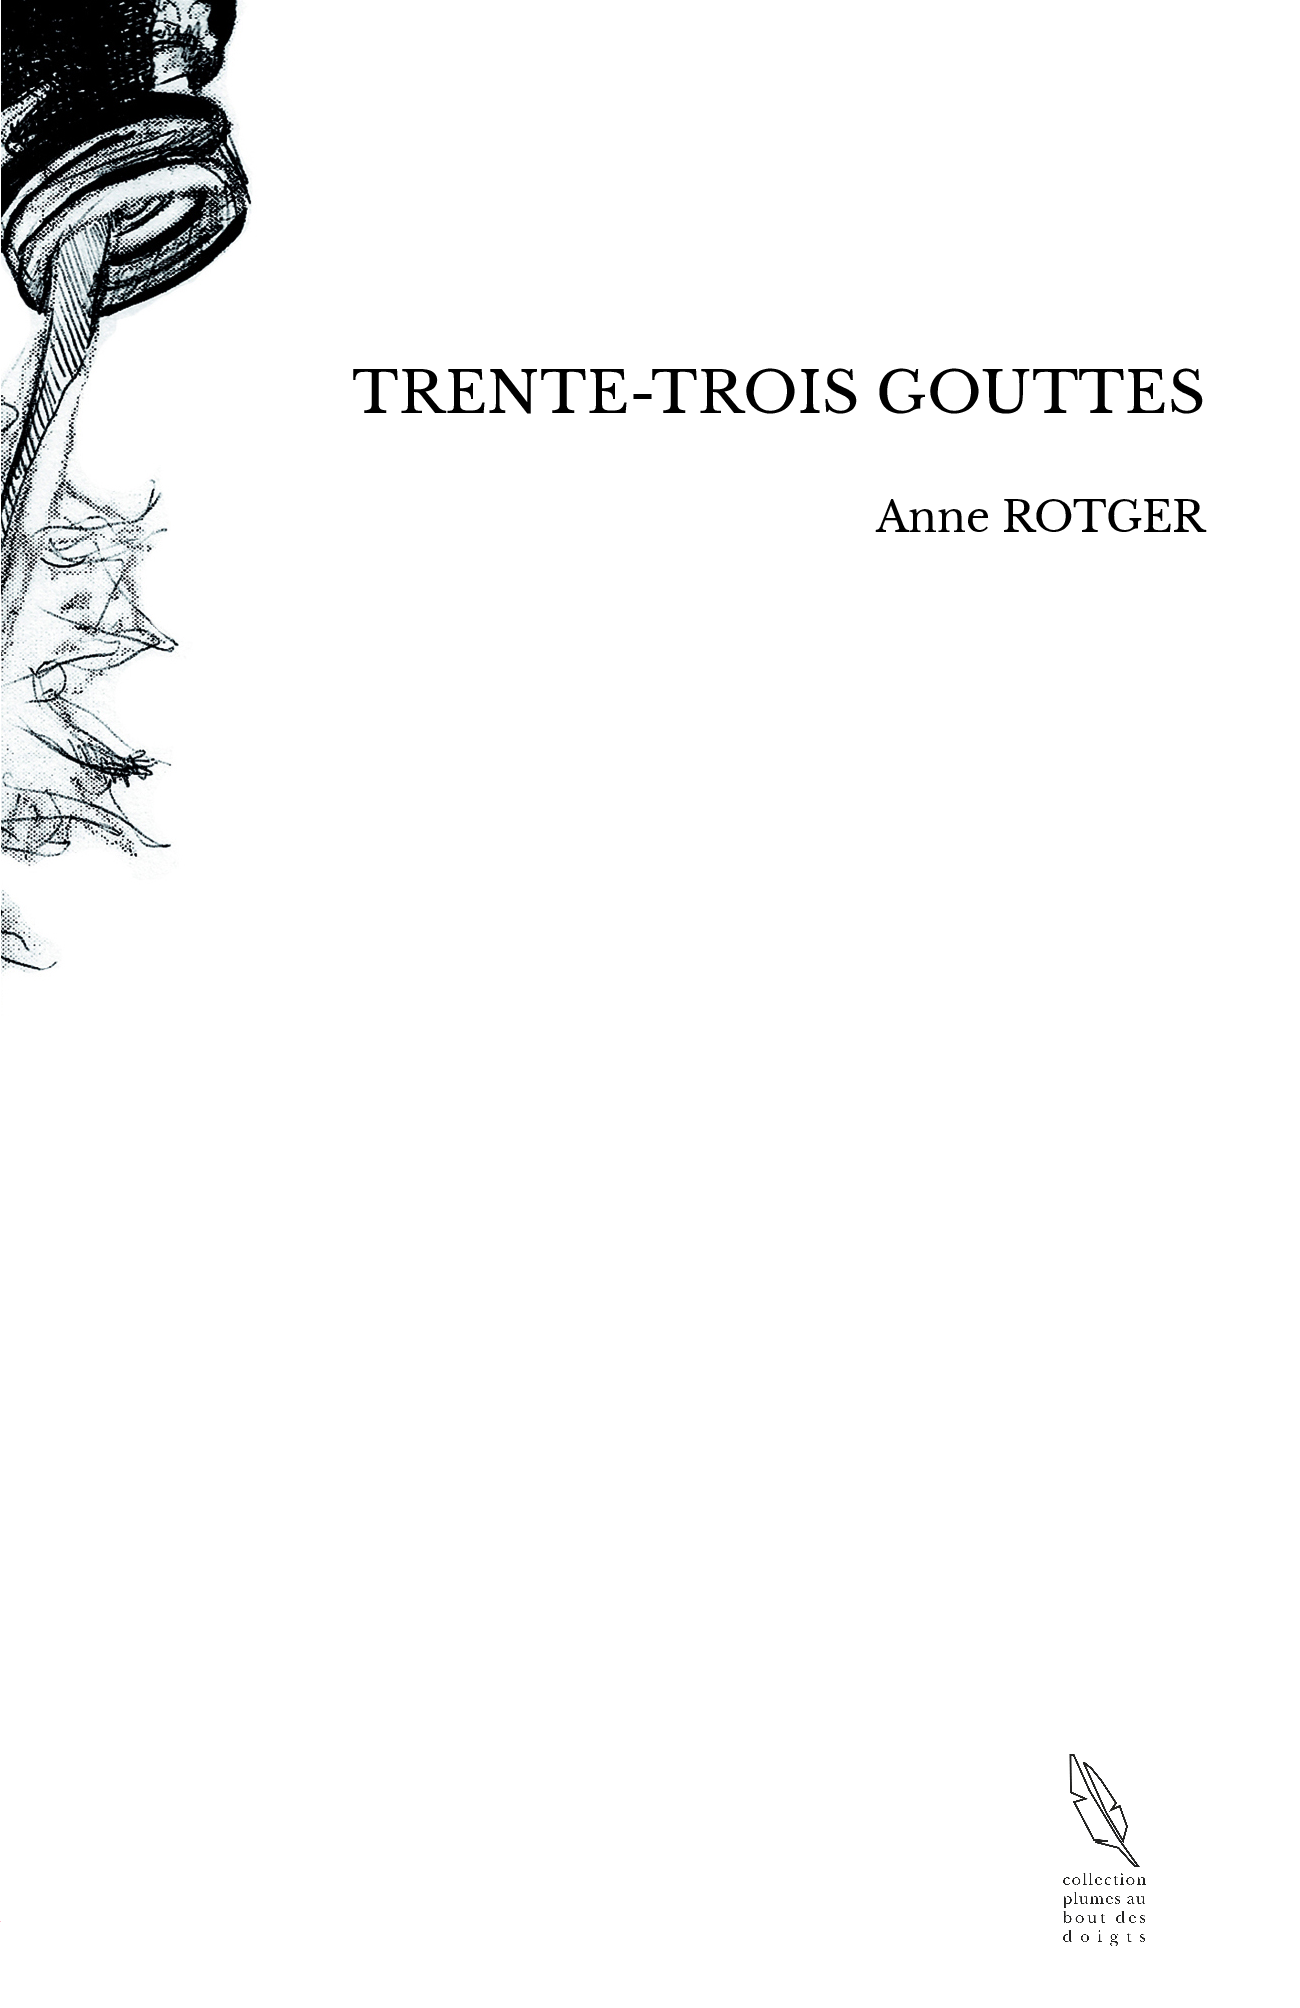 TRENTE-TROIS GOUTTES